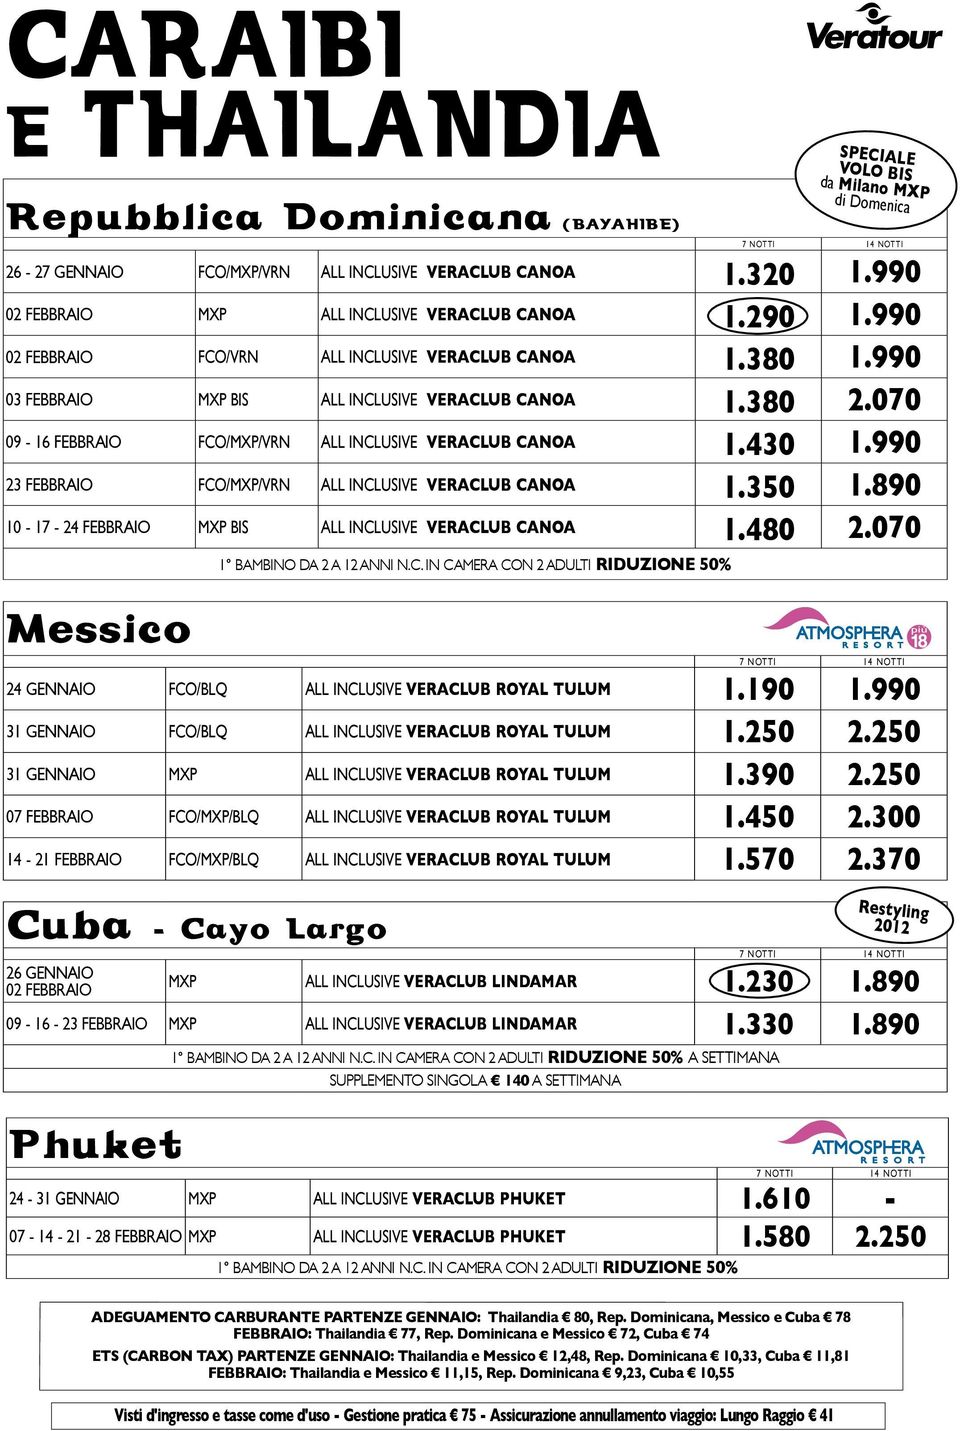 990 23 febbraio fco/mxp/vrn All Inclusive veraclub canoa 1.350 1.890 10-17 - 24 febbraio mxp bis All Inclusive veraclub canoa 1.480 2.